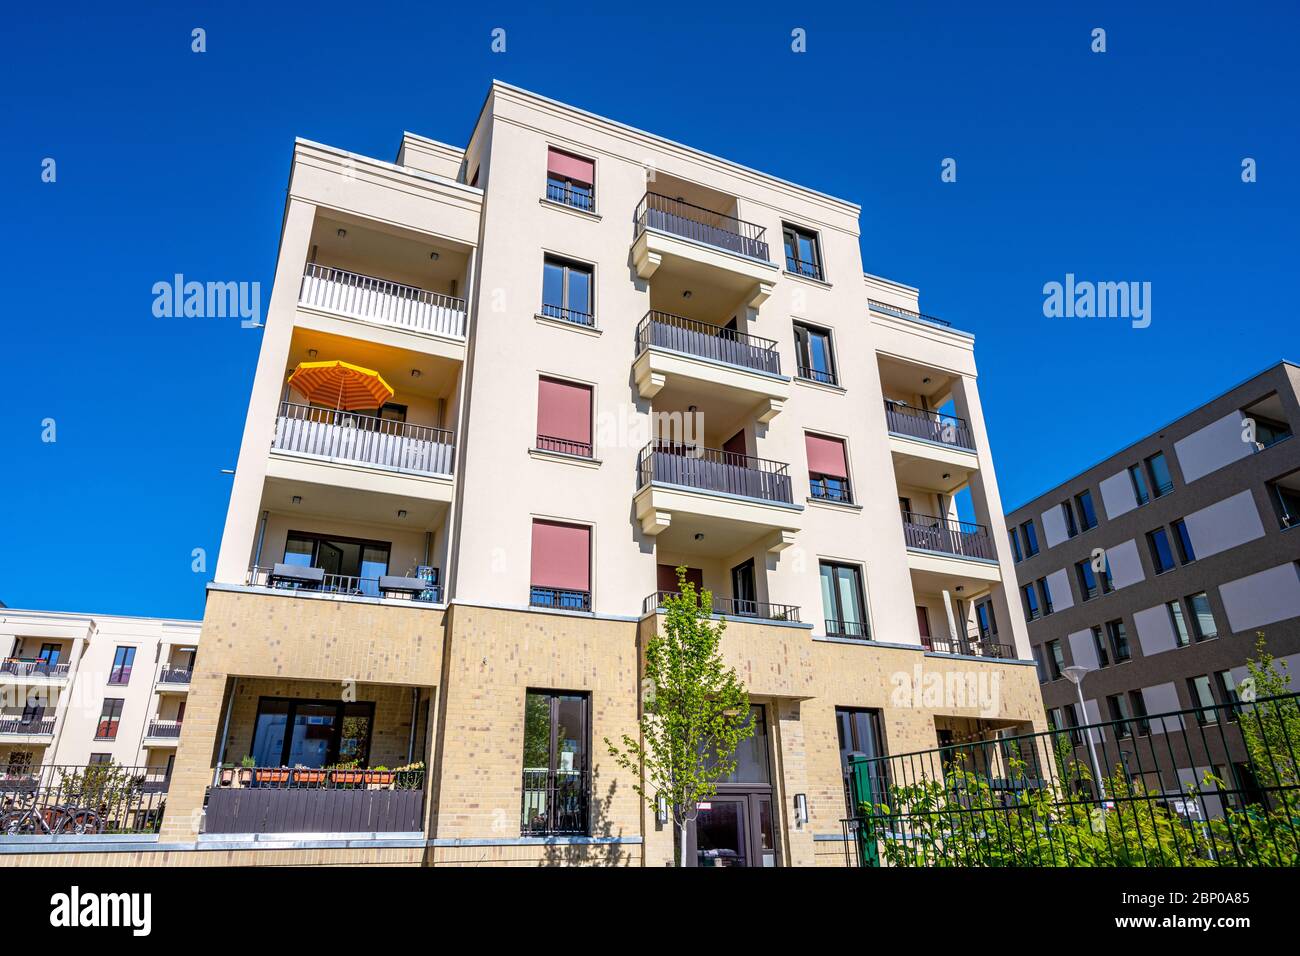 Modern beige multi-family house seen in Berlin, Germany Stock Photo